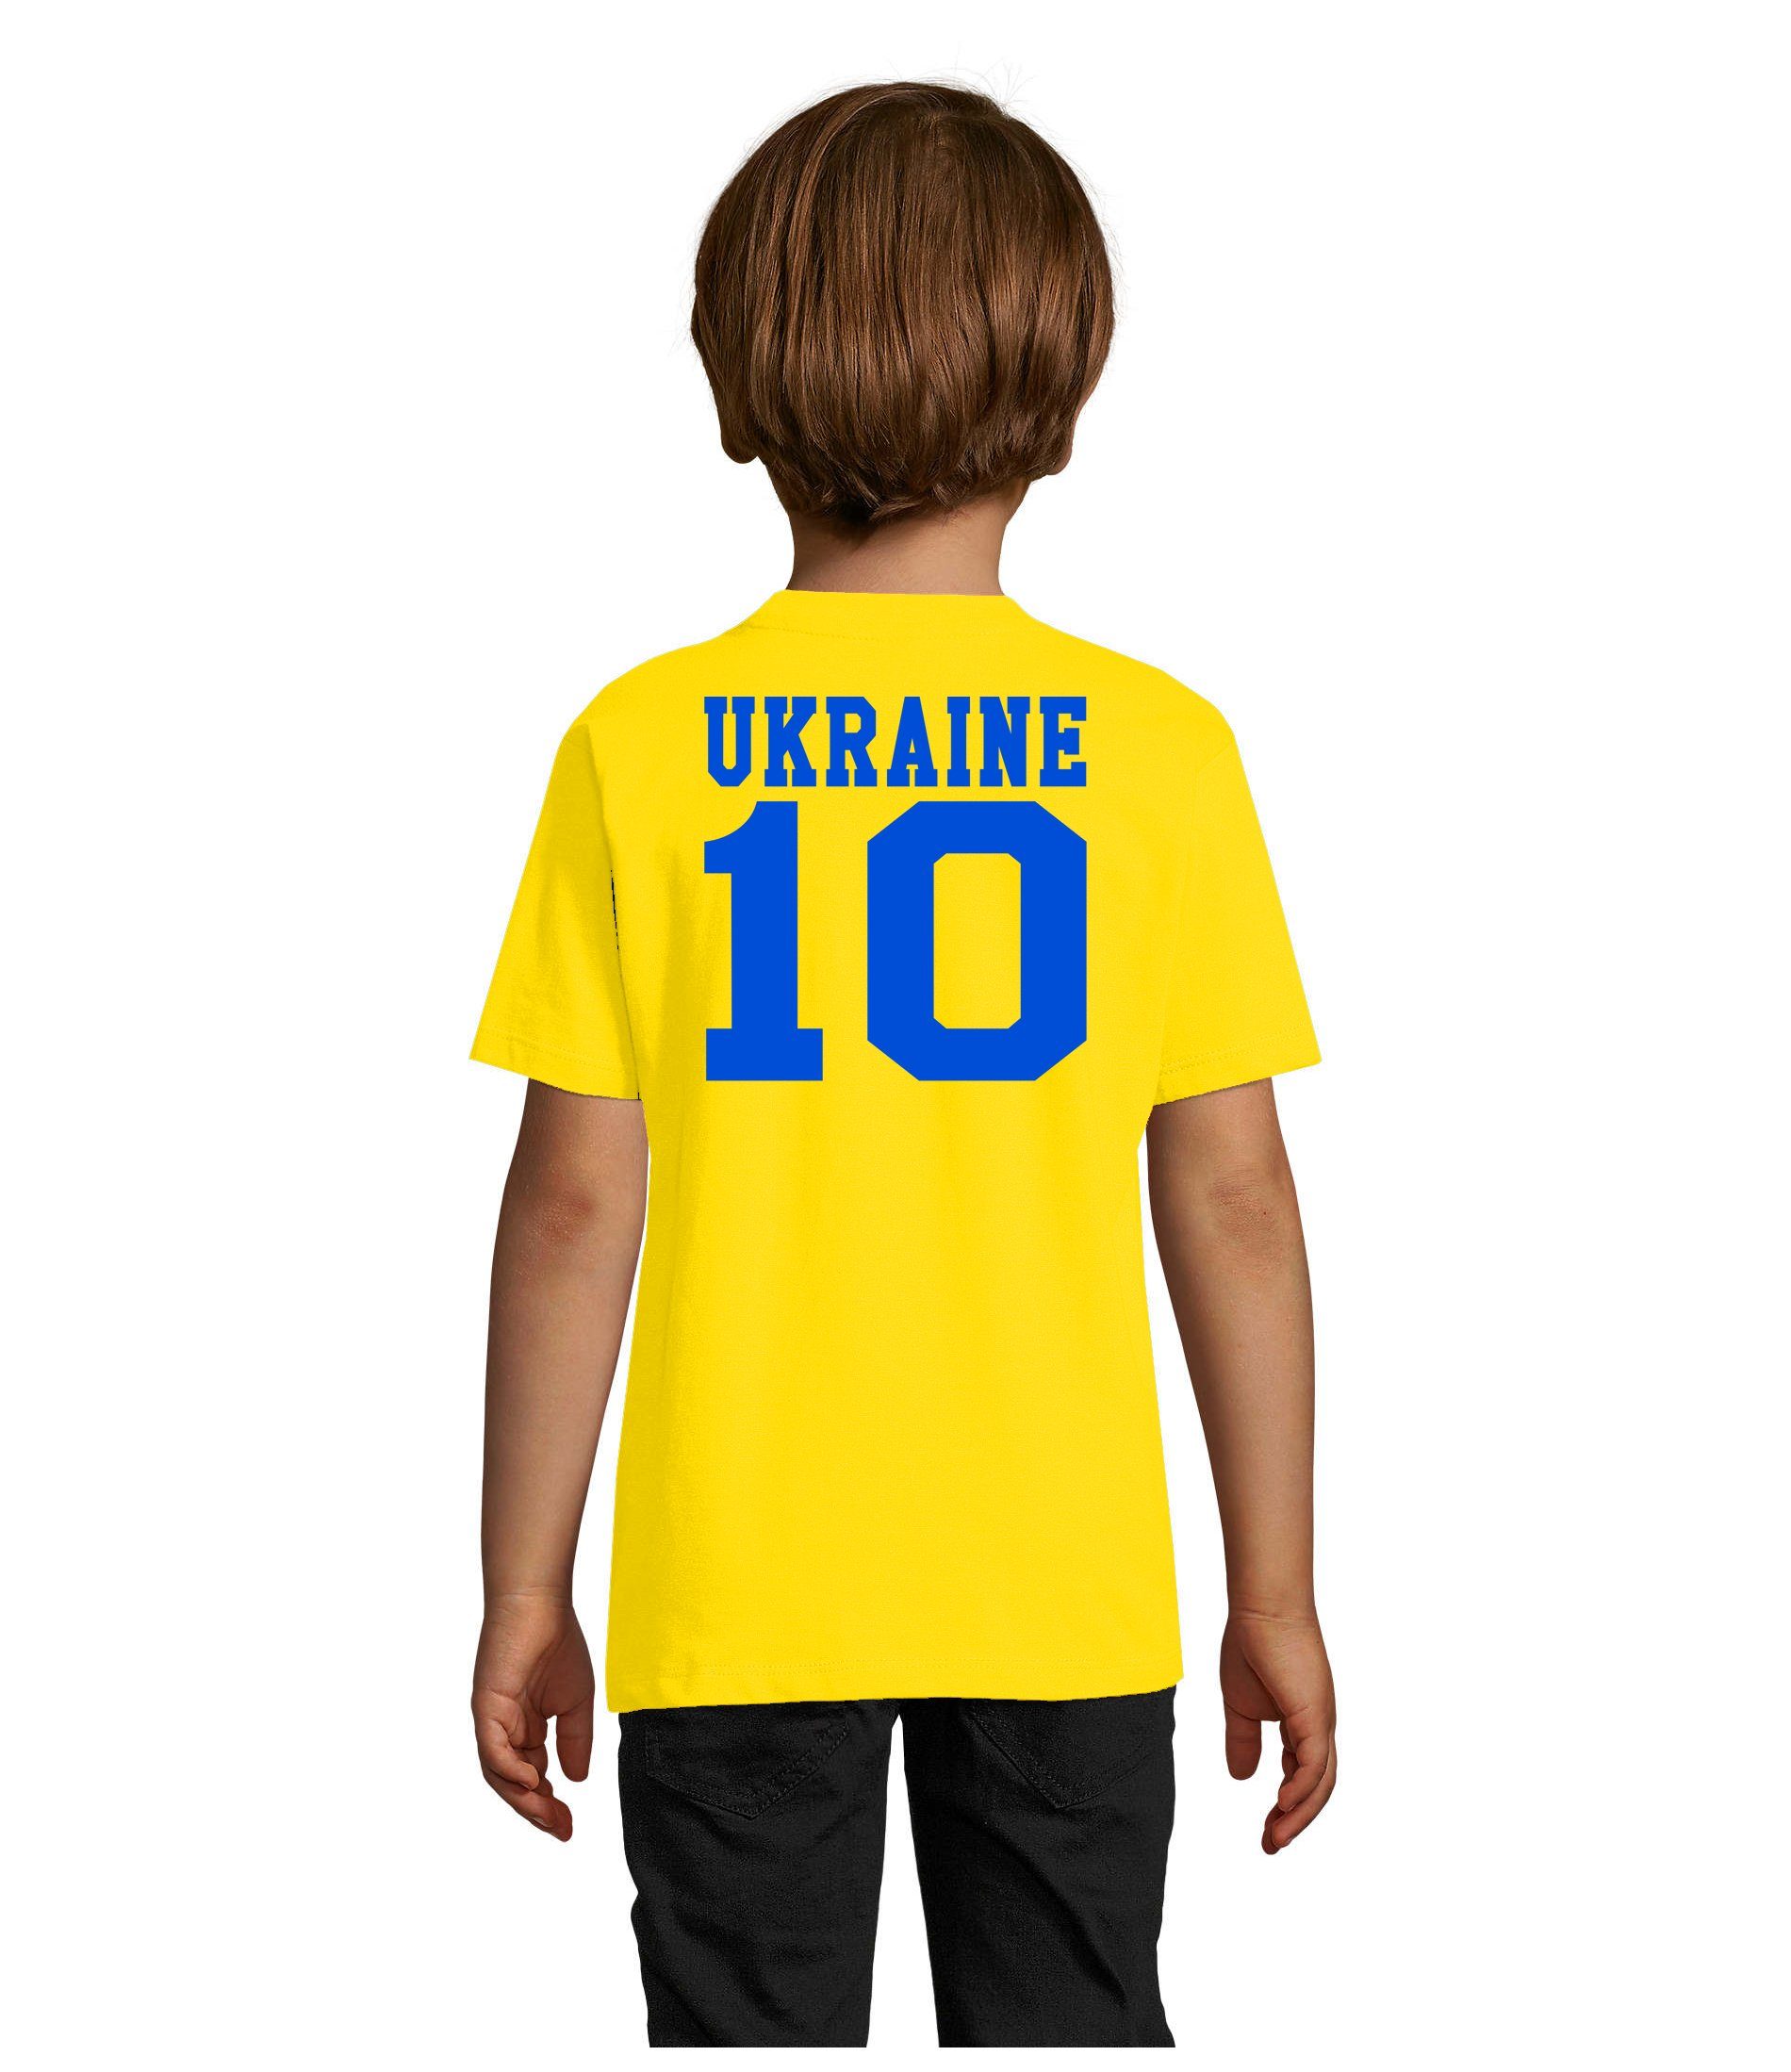 Blondie & Brownie T-Shirt Kinder Ukraine Meister Trikot Sport Fußball Ukraina WM Europa EM